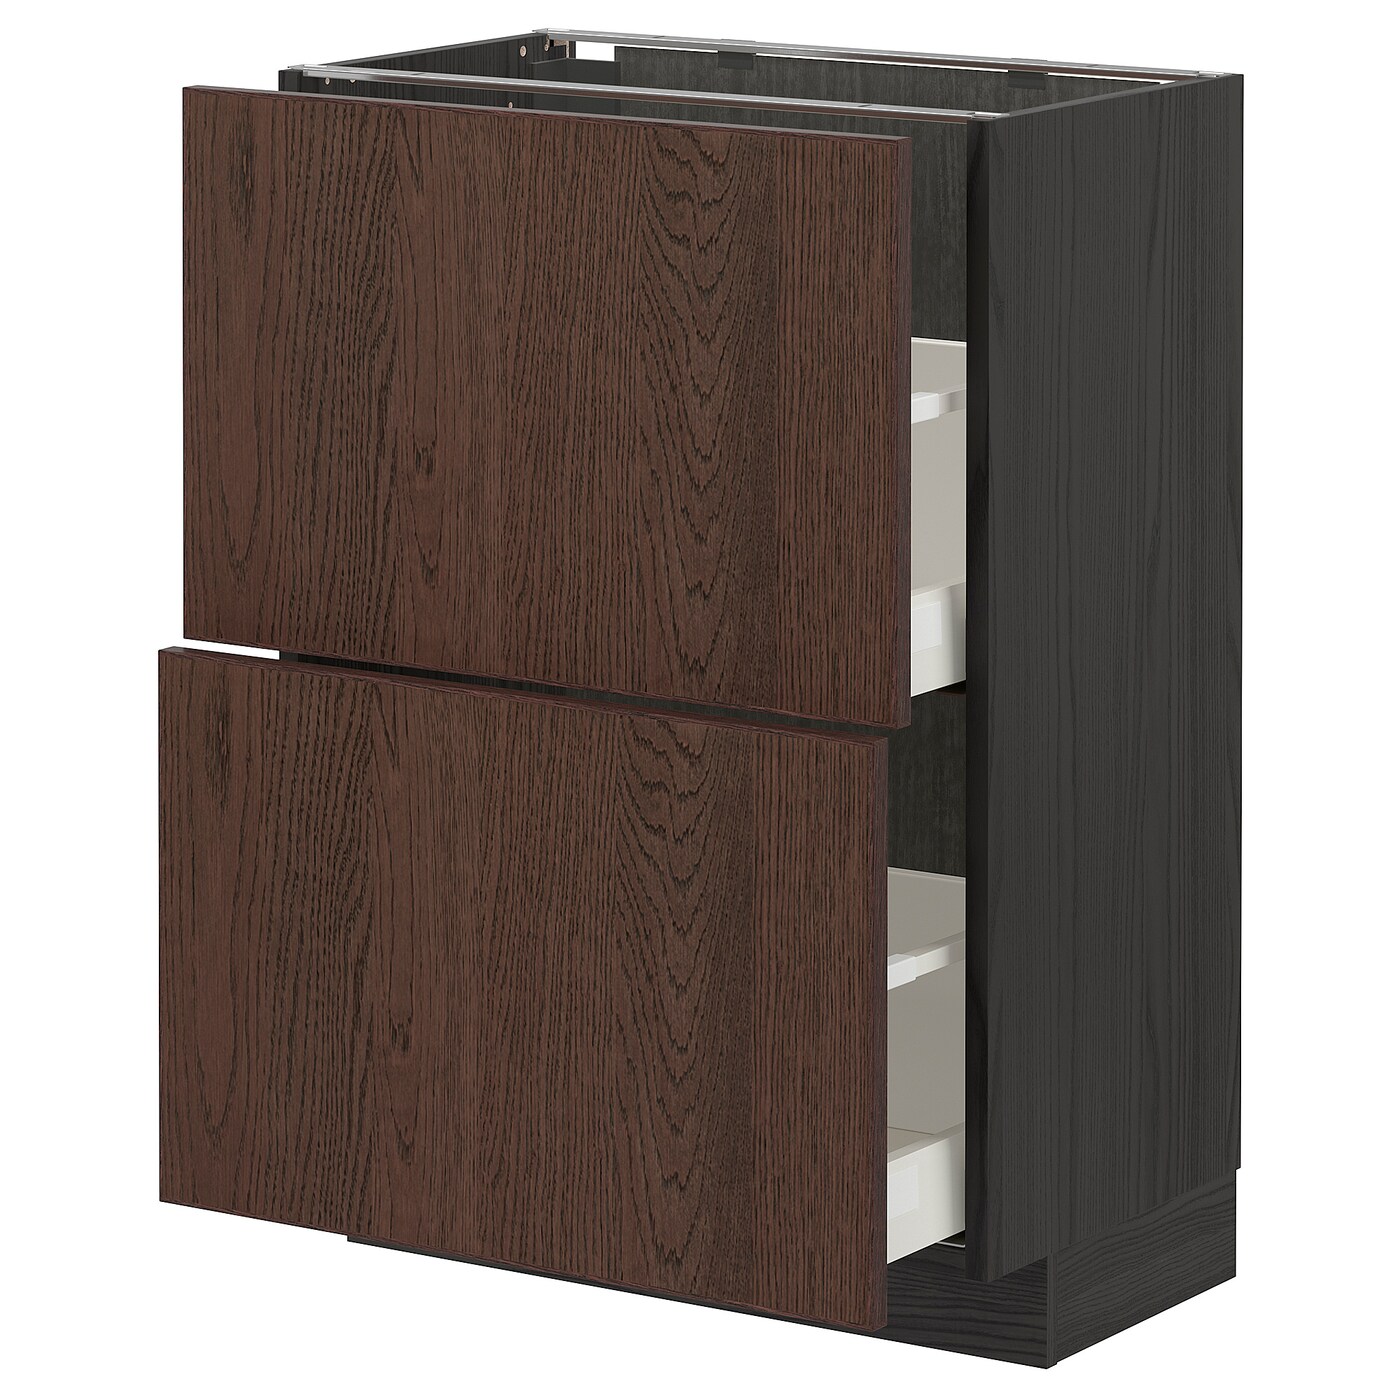 Напольный шкаф - METOD / MAXIMERA IKEA/ МЕТОД/ МАКСИМЕРА ИКЕА,  88х60 см, коричневый